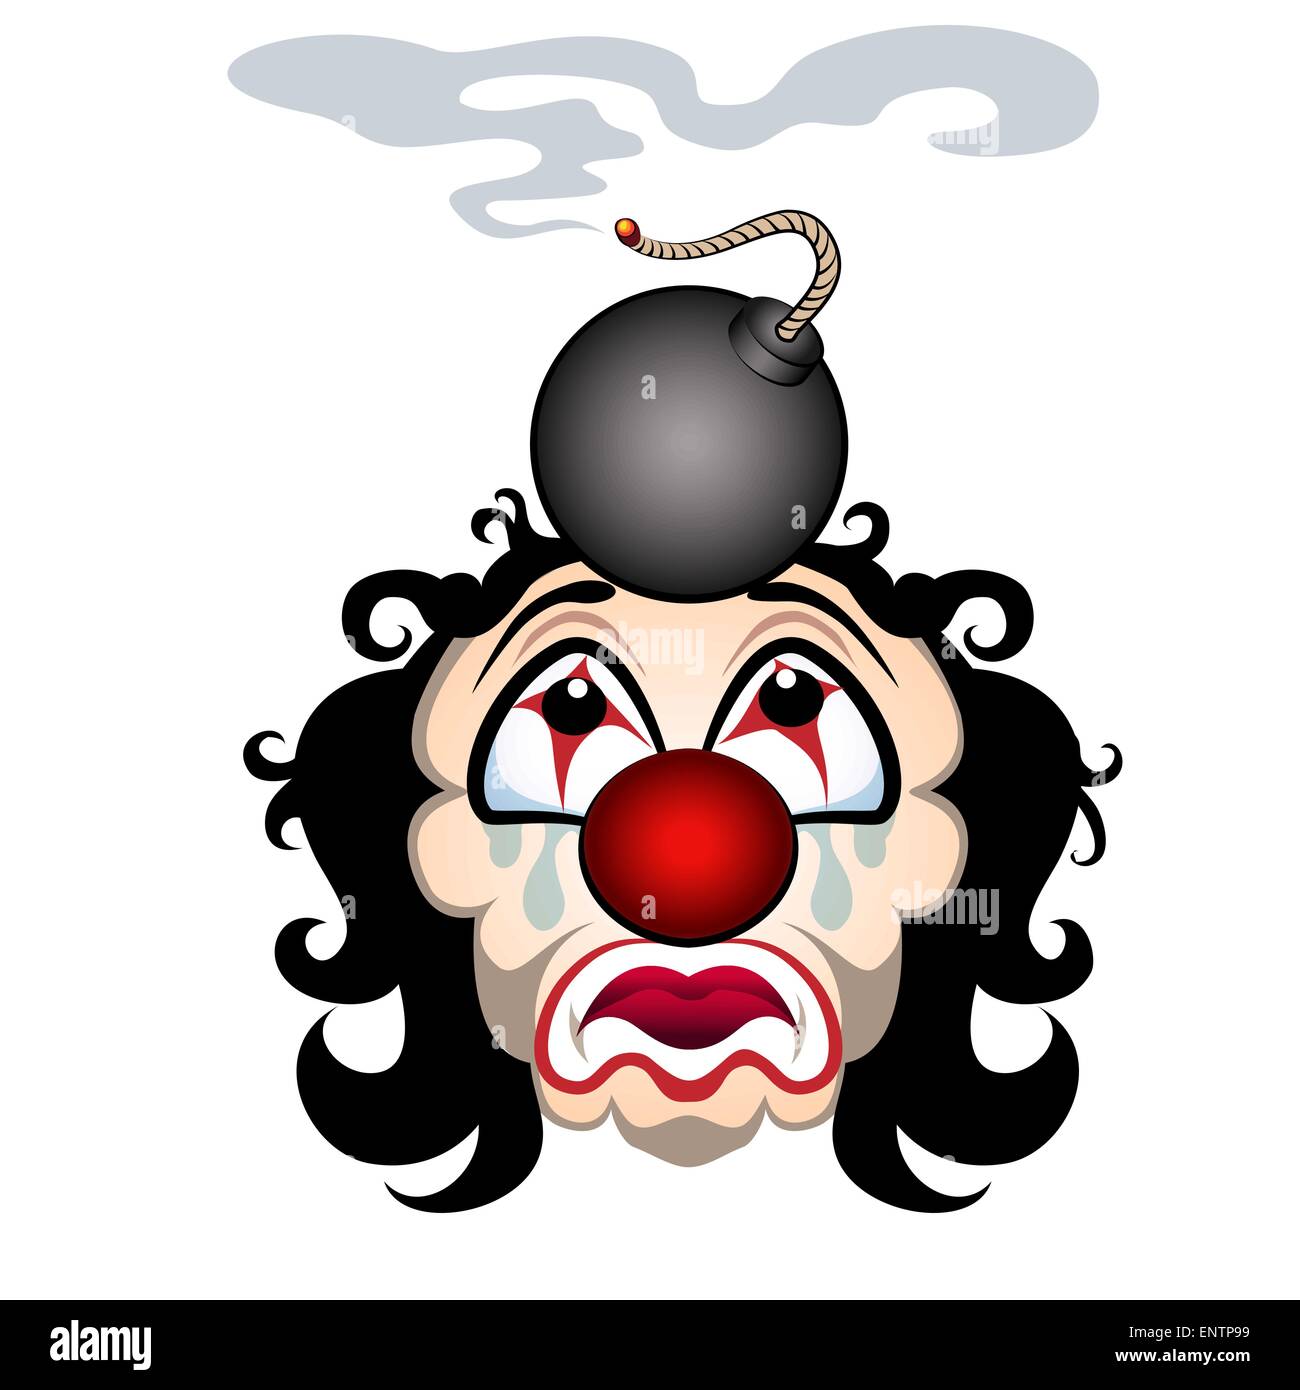 Fumetto illustrazione della sad clown con il lit bomba sulla sua testa. Isolato su sfondo bianco. Illustrazione Vettoriale